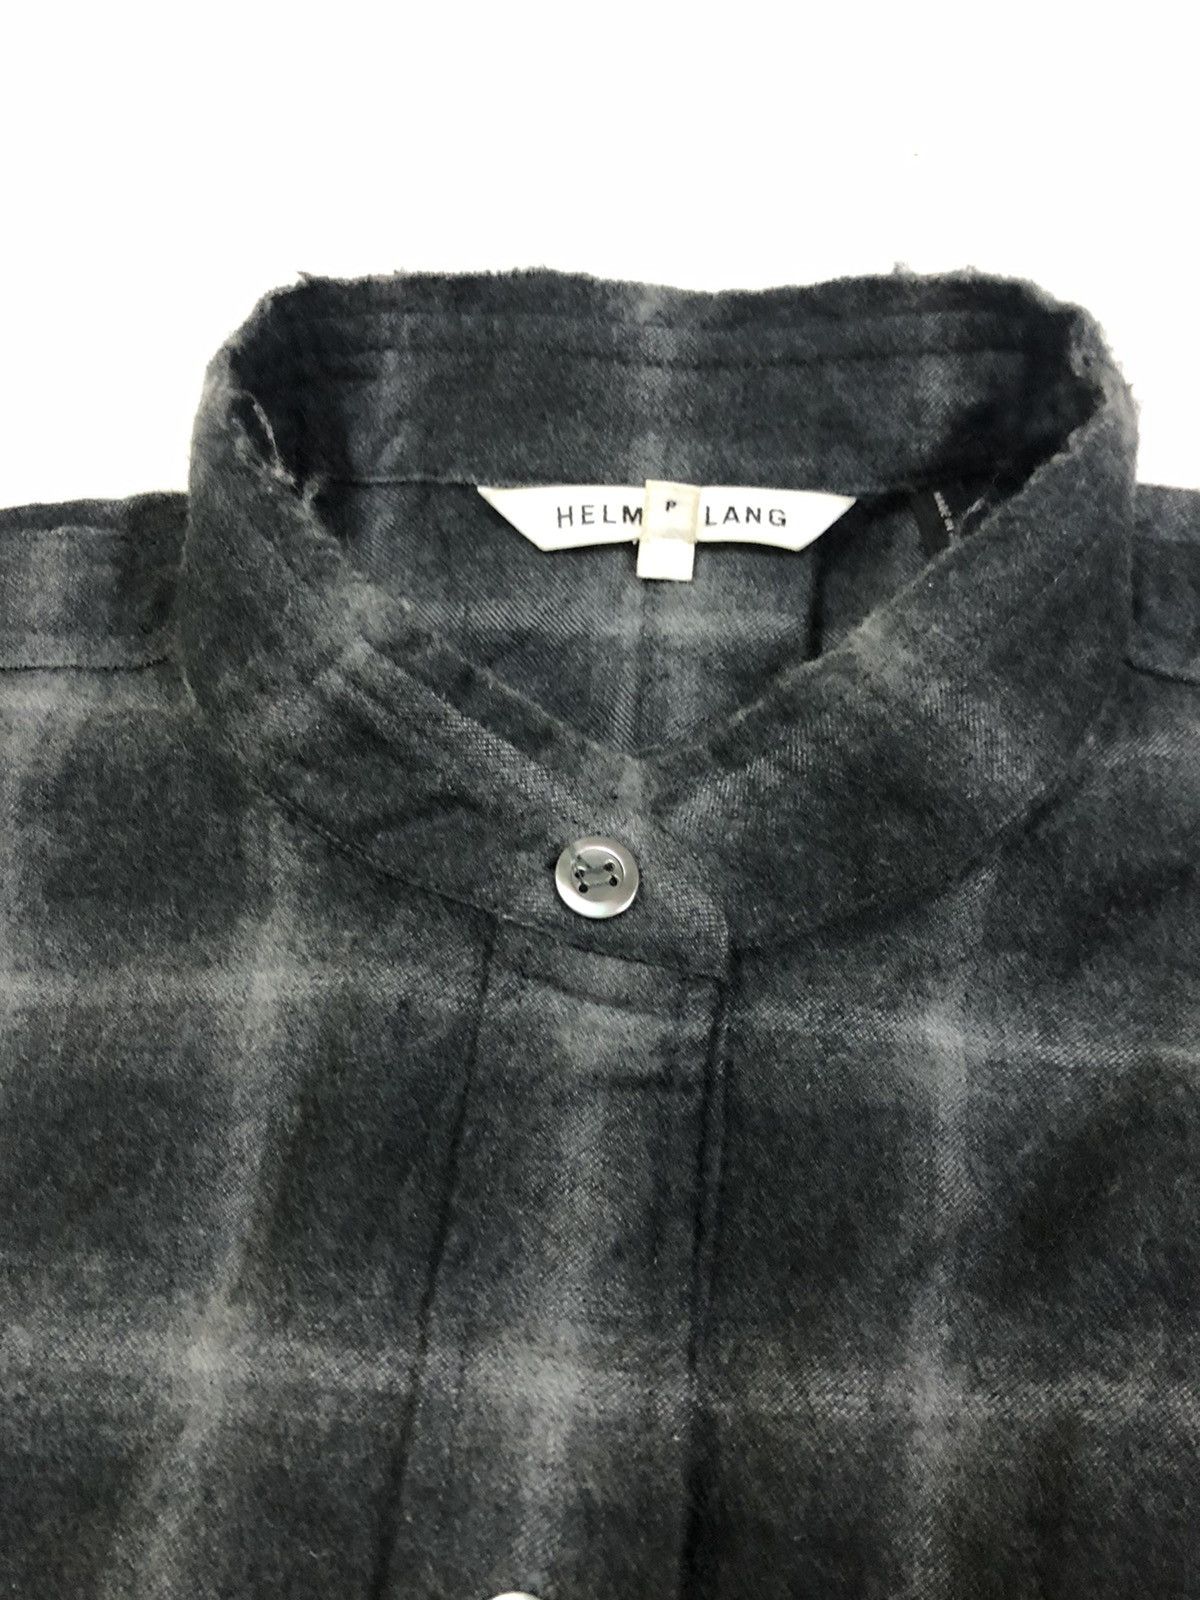 Helmut Lang Oversized Shadowed Plaid Bondage Wool Shirt - 10